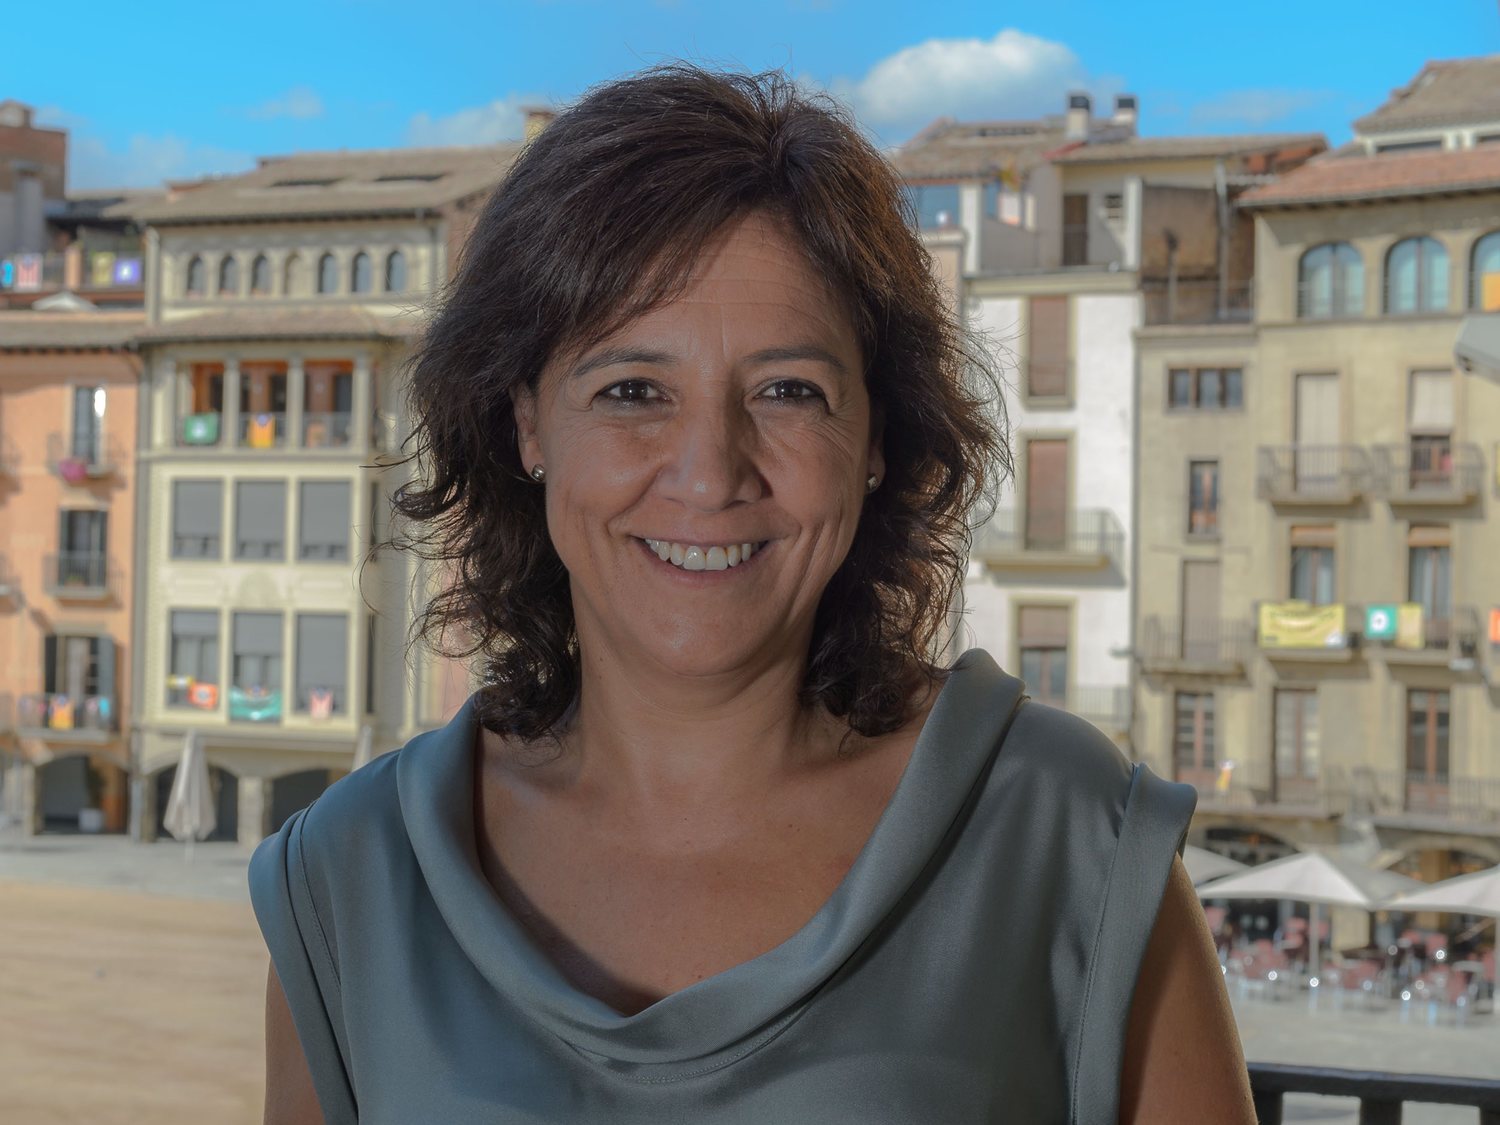 La alcaldesa de Vic insta a hablar solo en catalán "a quien por su físico no lo parezca"